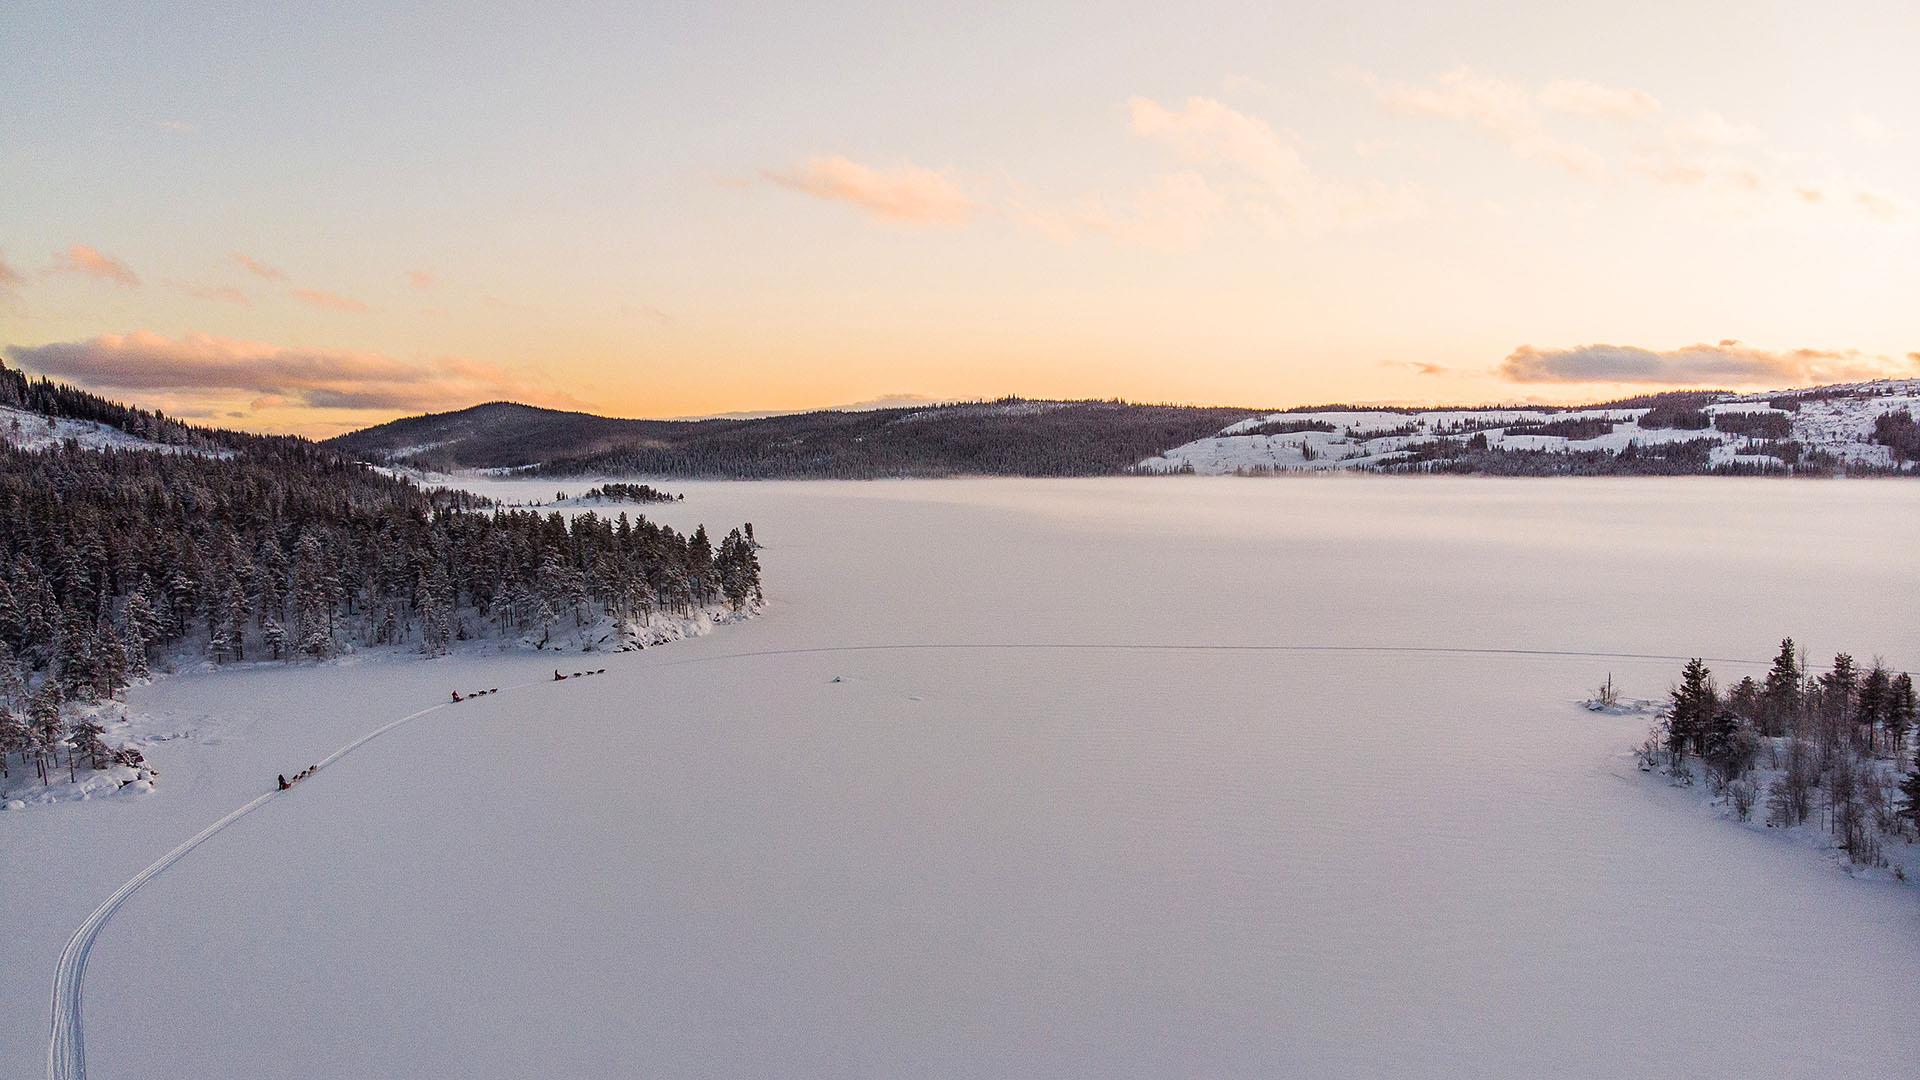 Dronenaufnahme dreier Hundegespanne auf einem großen, schneebedeckten See in Wald- und Berglandschaft. Die untergehende Sonne zeichnet weiche, warme Farben.